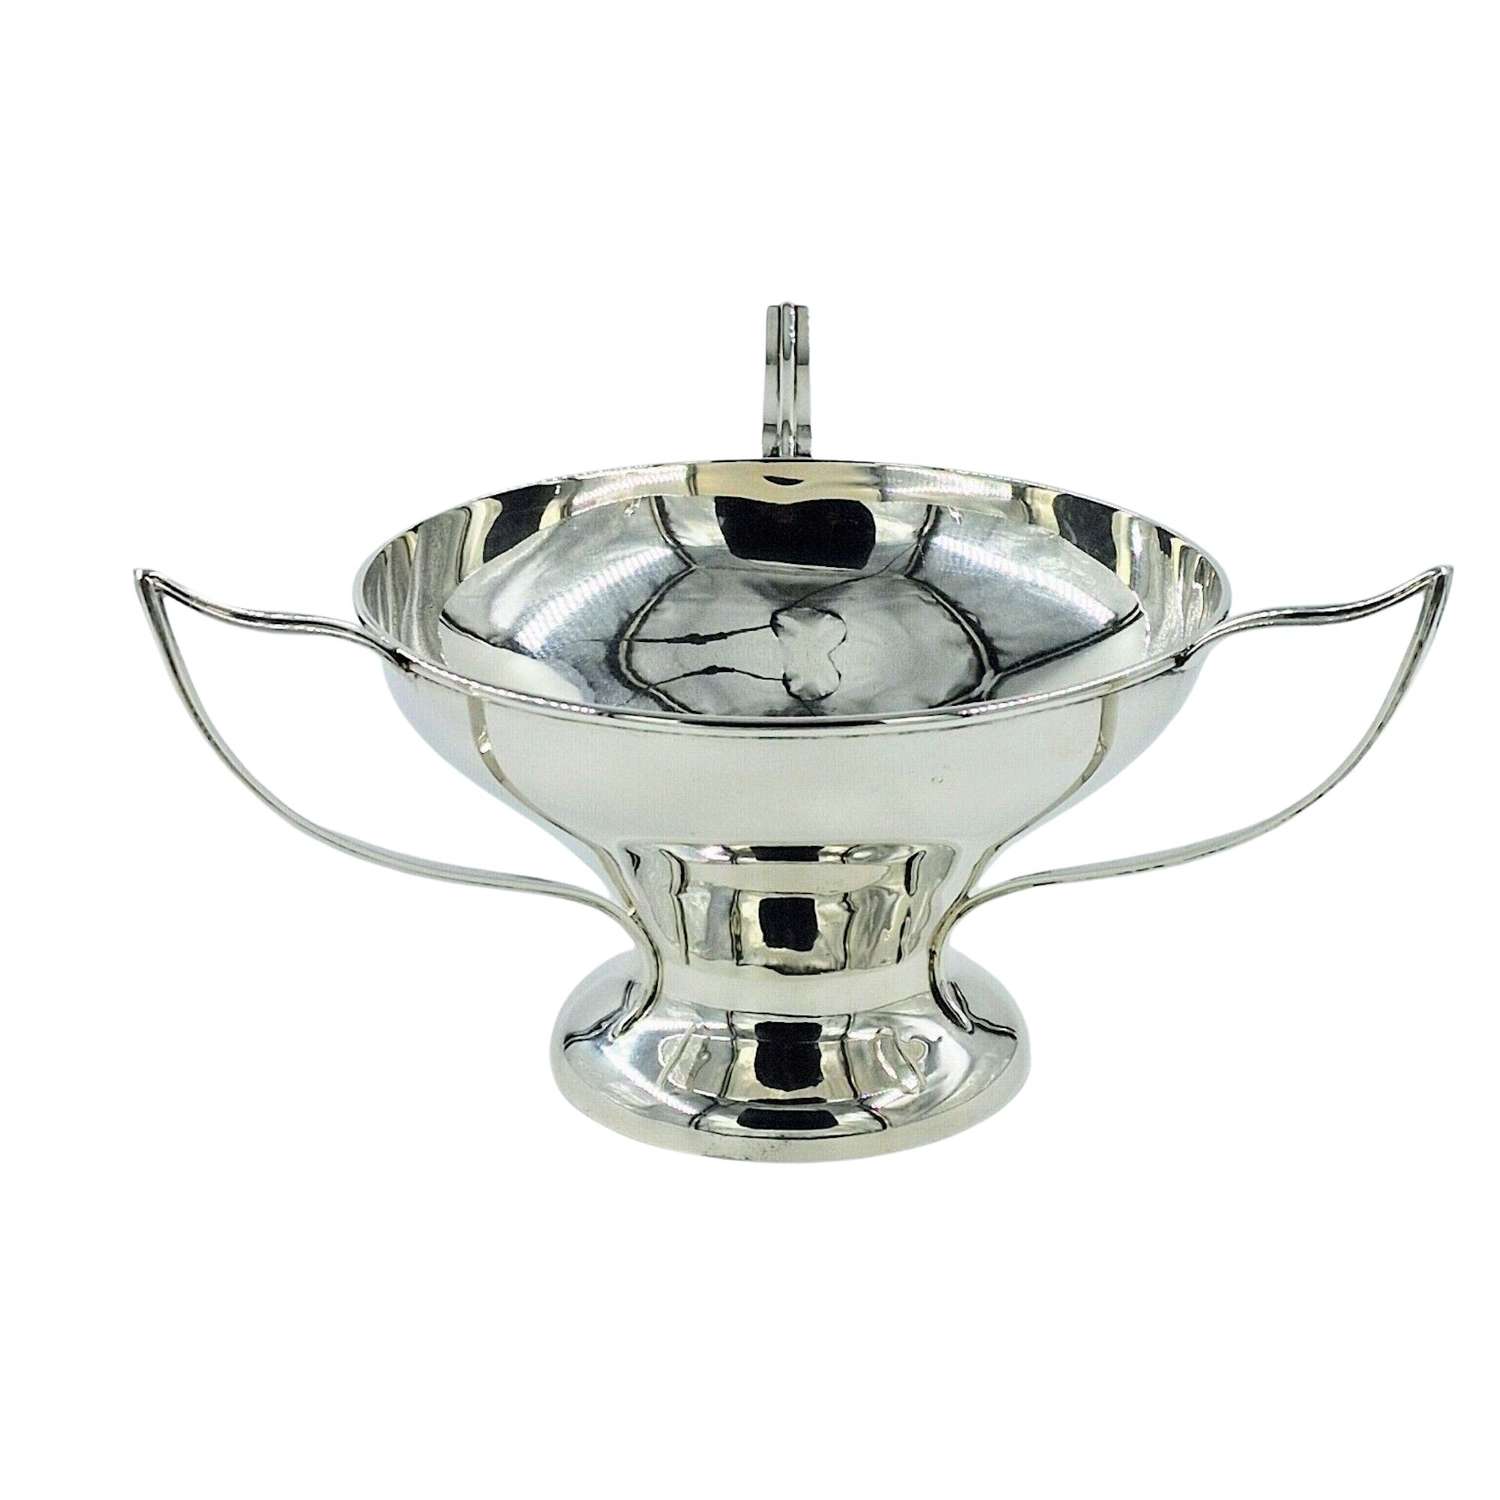 Antique Solid Silver Art Nouveau Bowl 1908 Dish Tyg Centrepiece